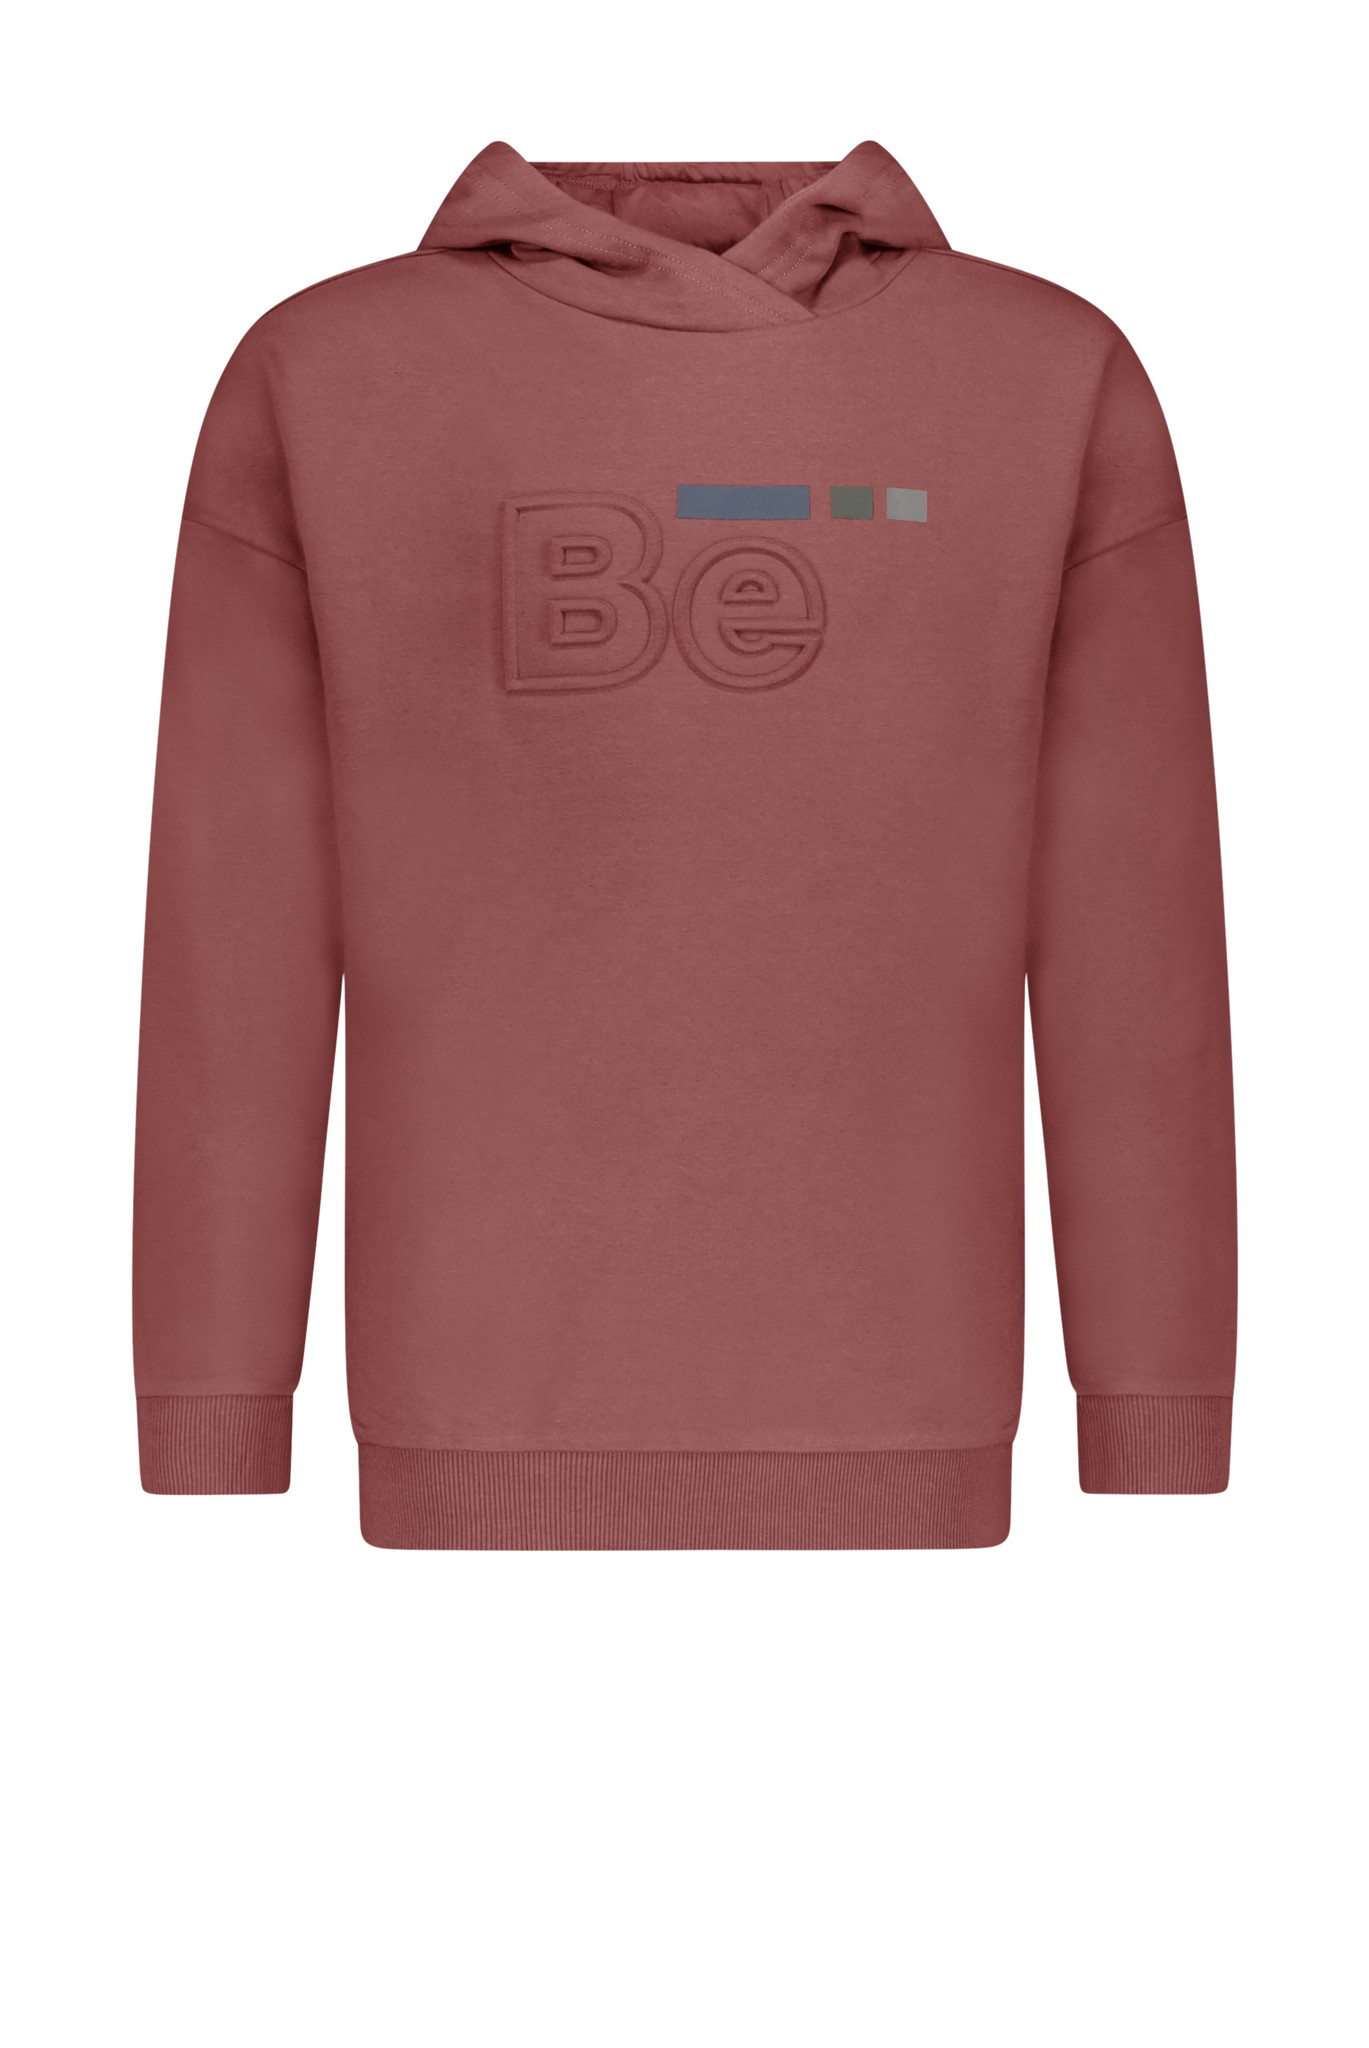 Bellaire Sweater jongen rose brown maat 122/128